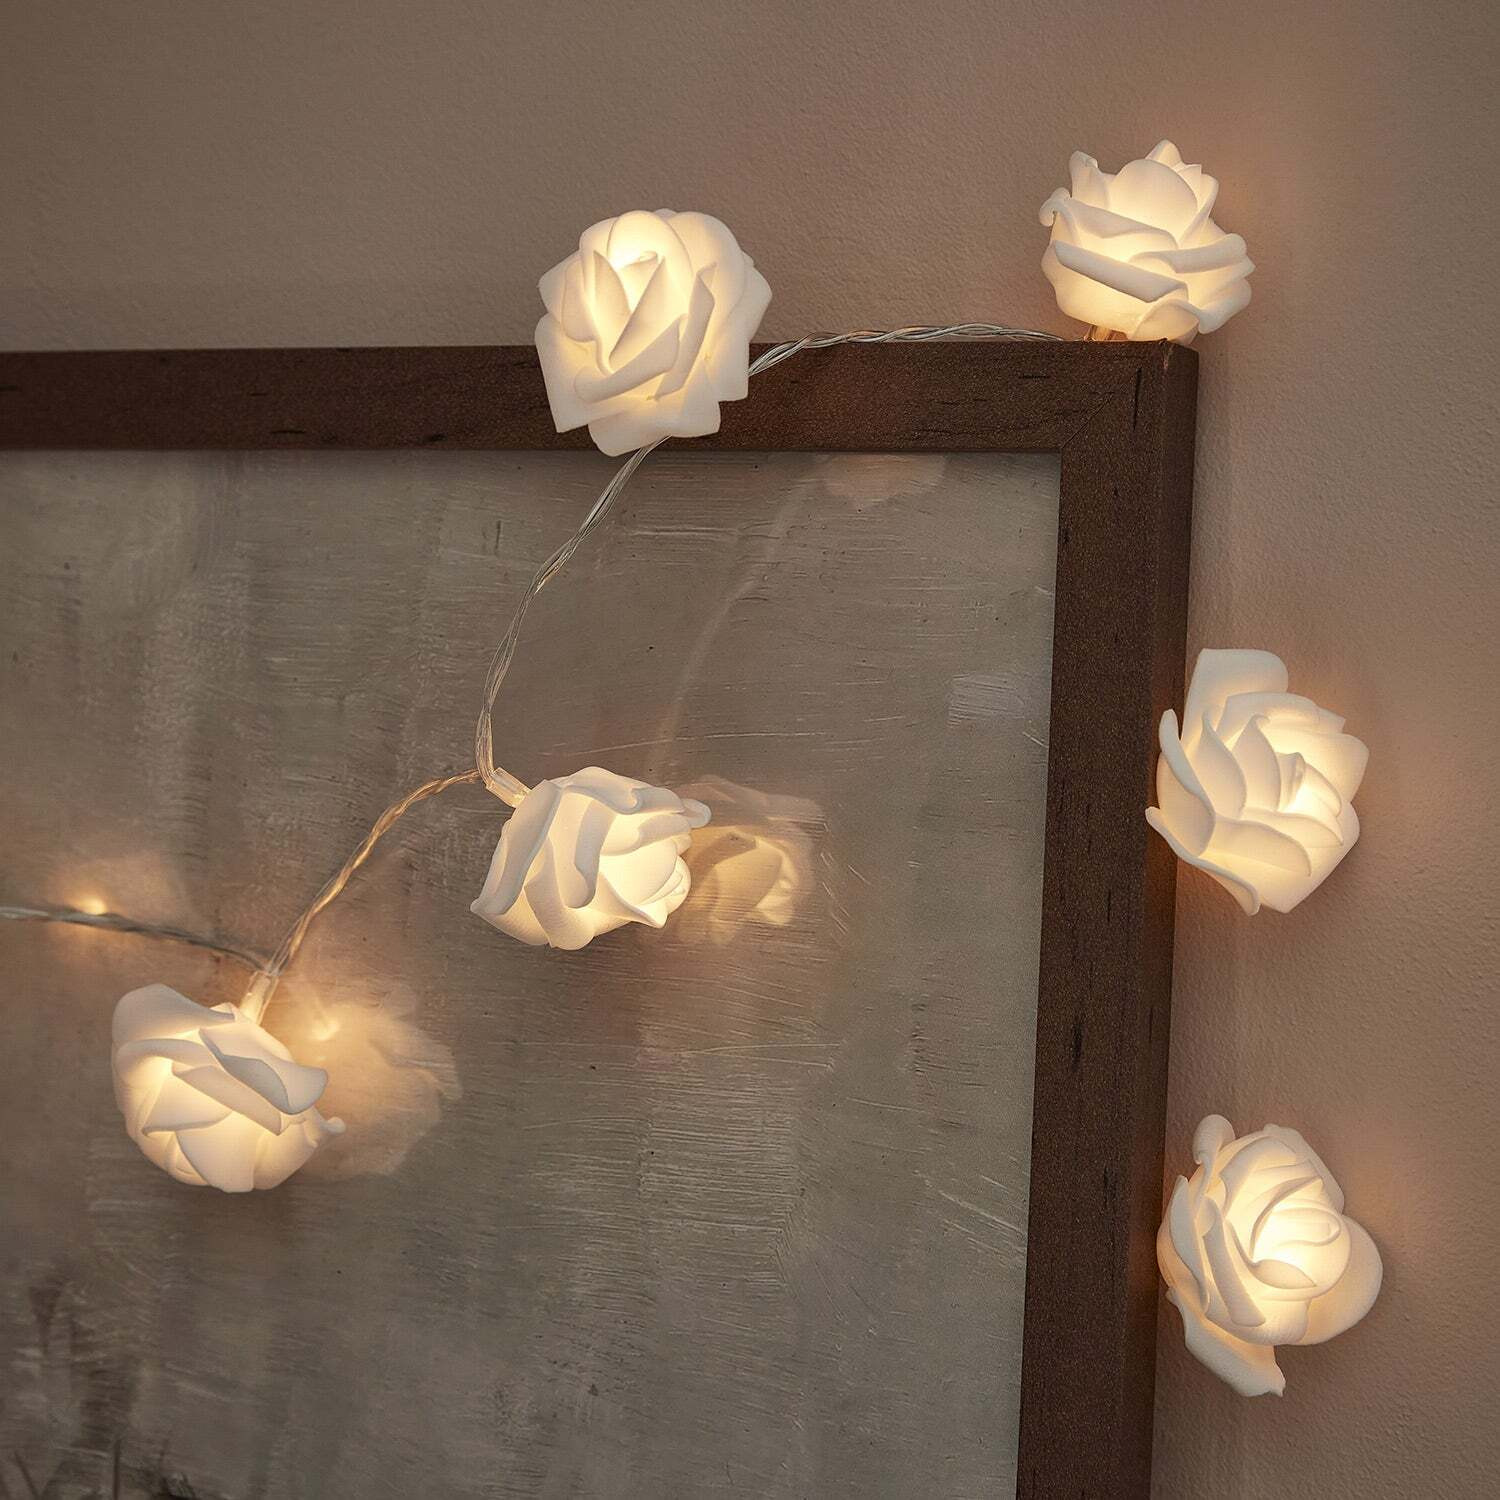 20 Warm White LED Rose Flower Battery Fairy Lights - image 1